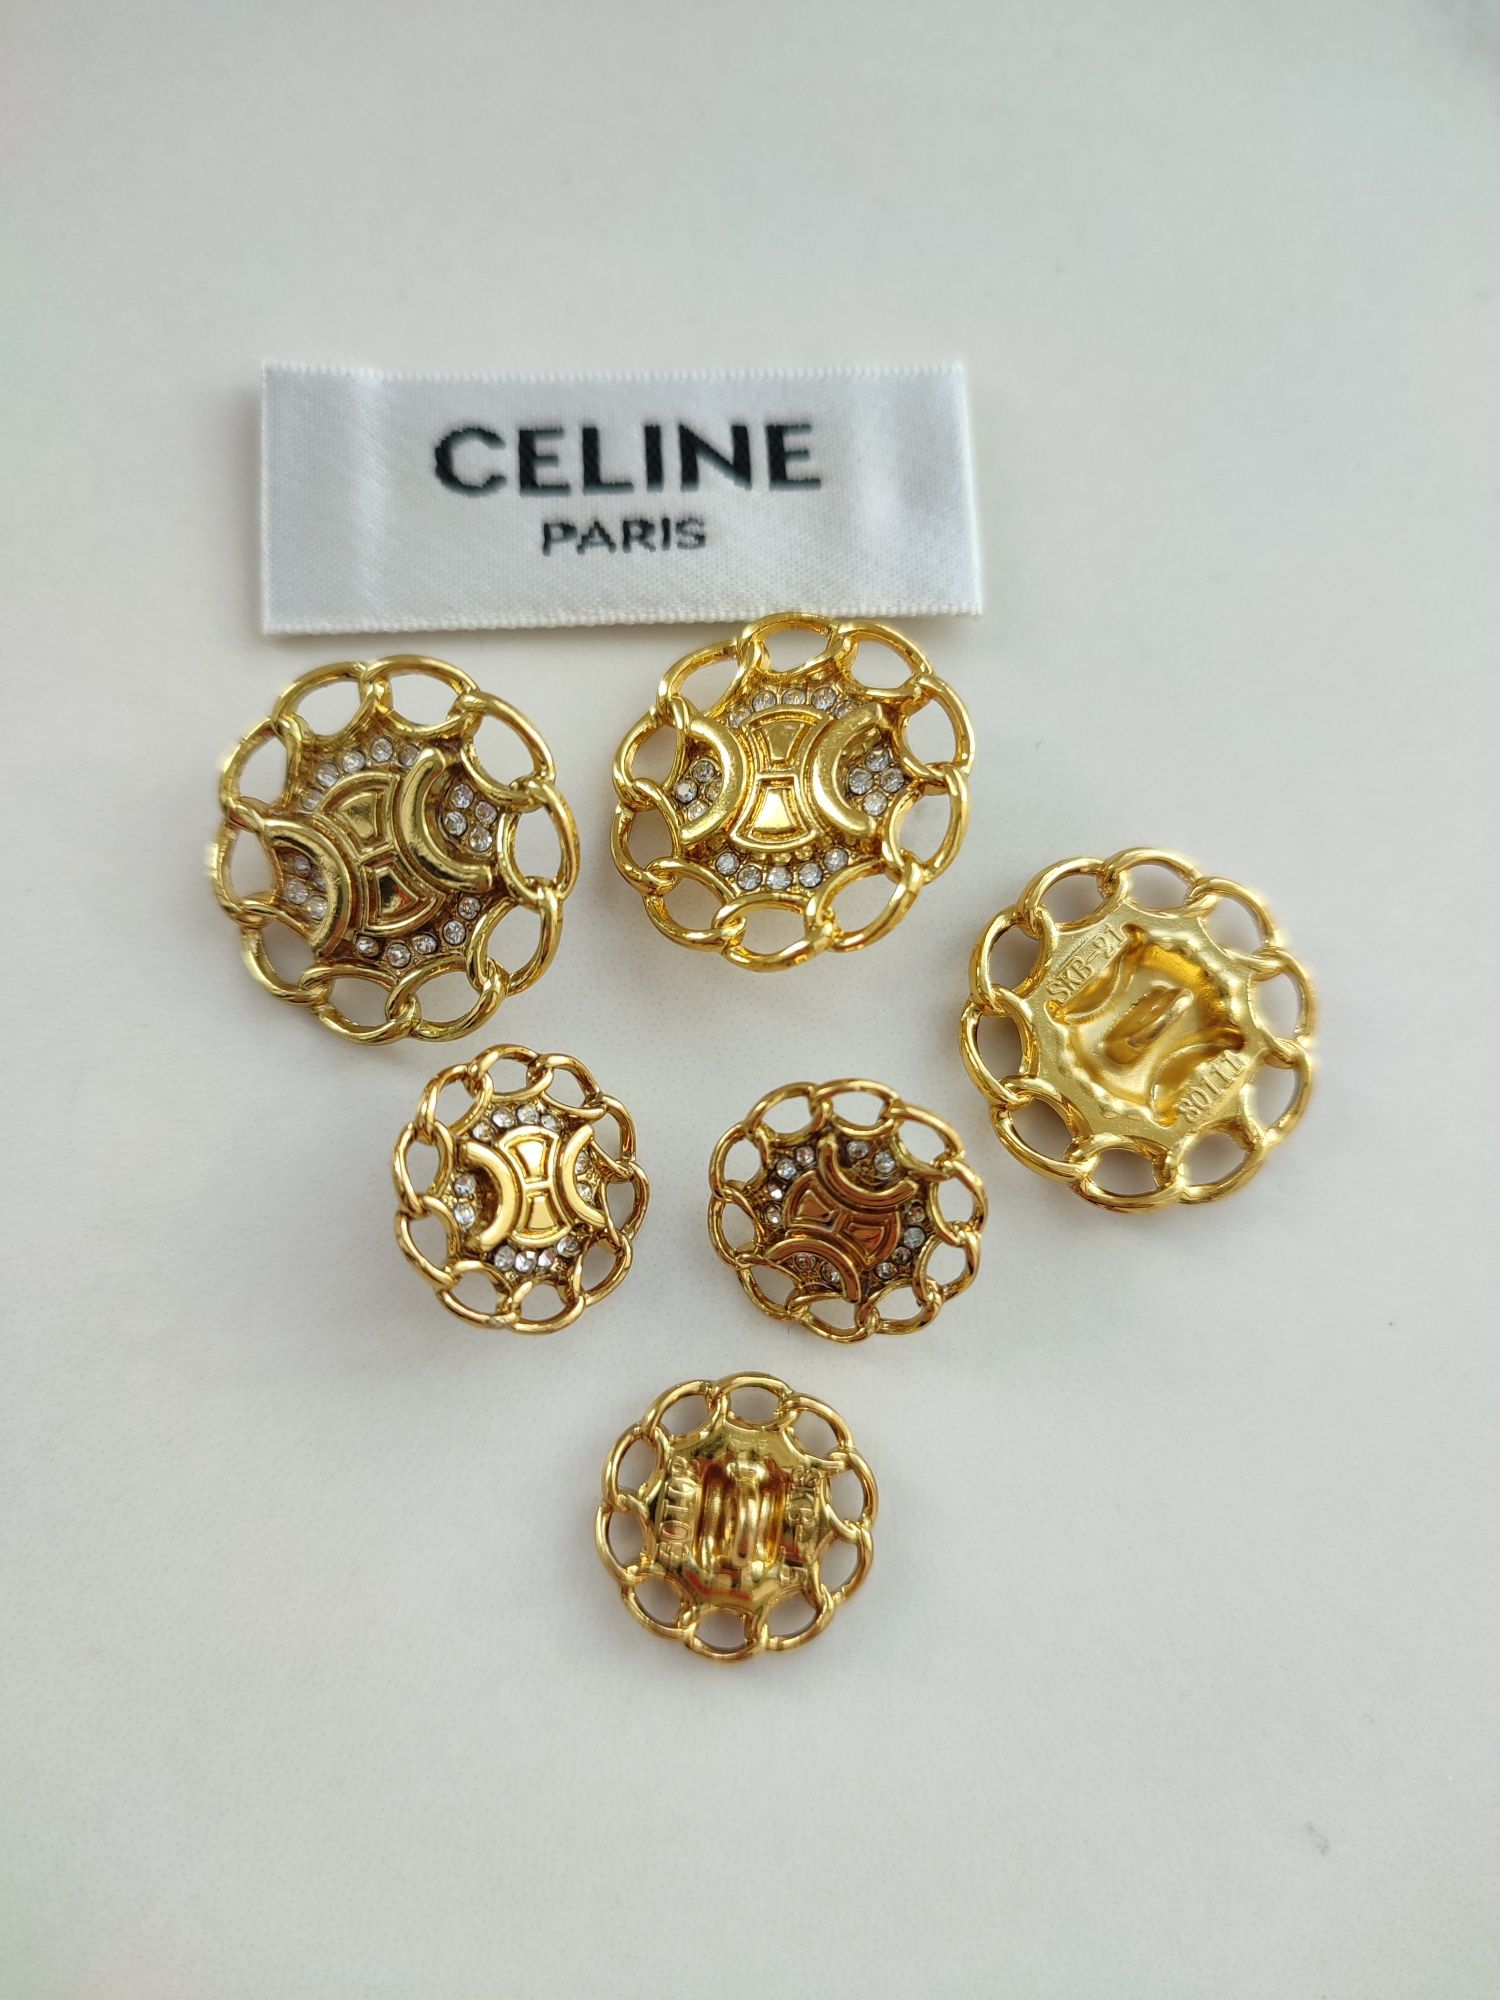 Пуговицы Celine 15 mm 22mm,DG,Chanel 18 mm, 22 mm,